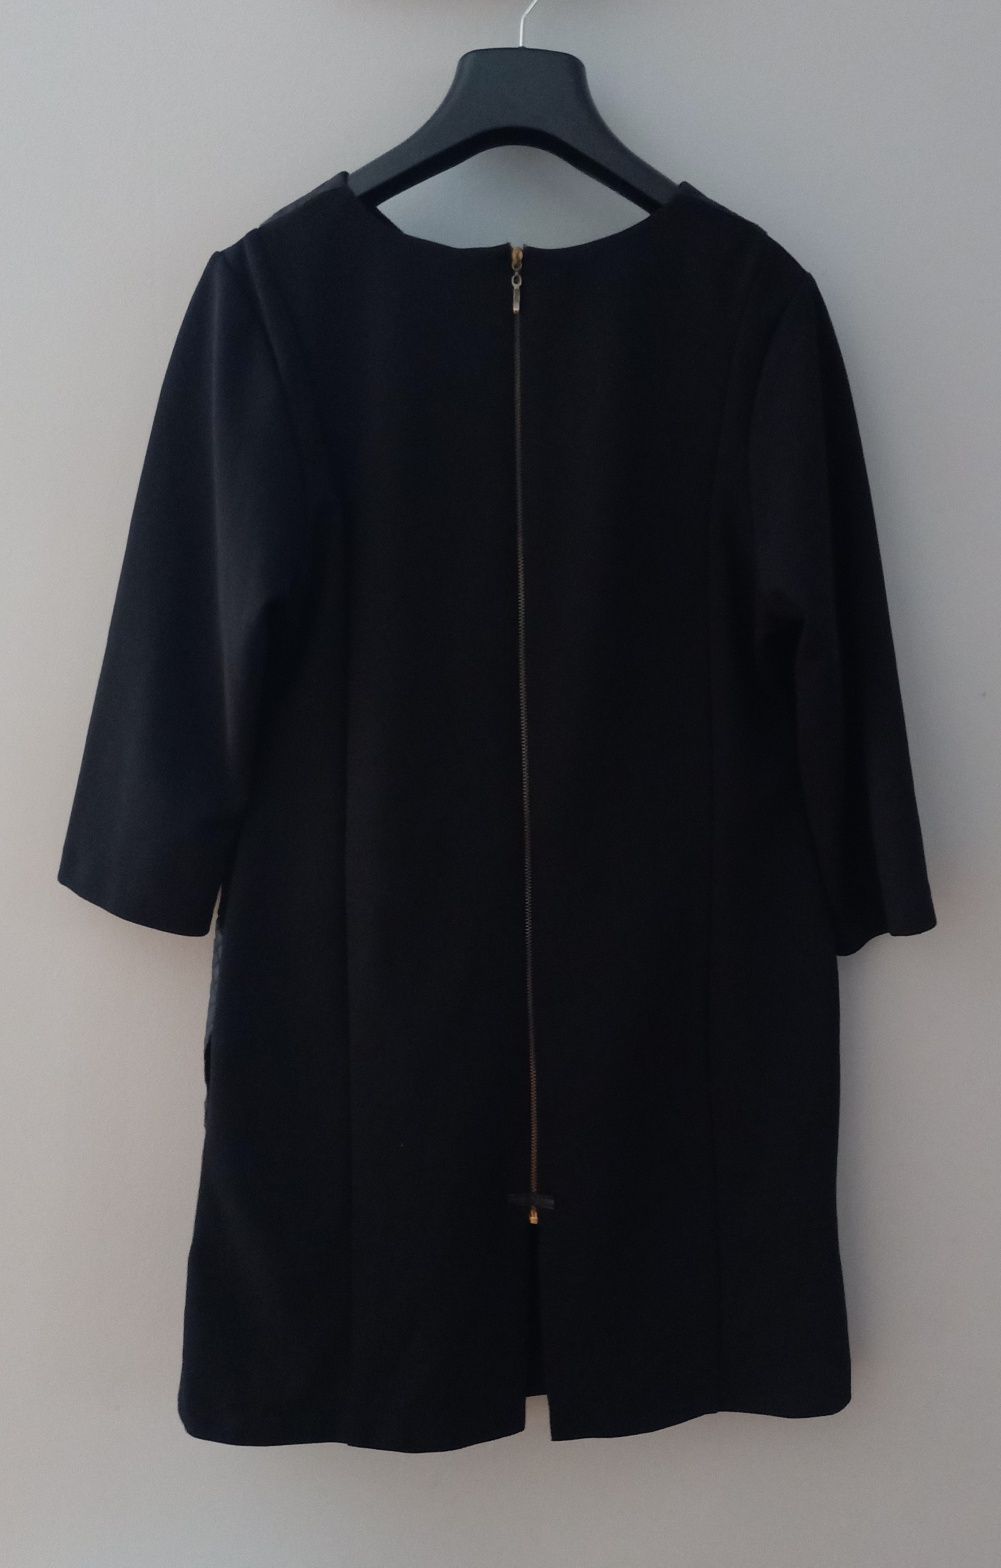 Czarna sukienka z pazurem, Gonto 52, zamek, skóra